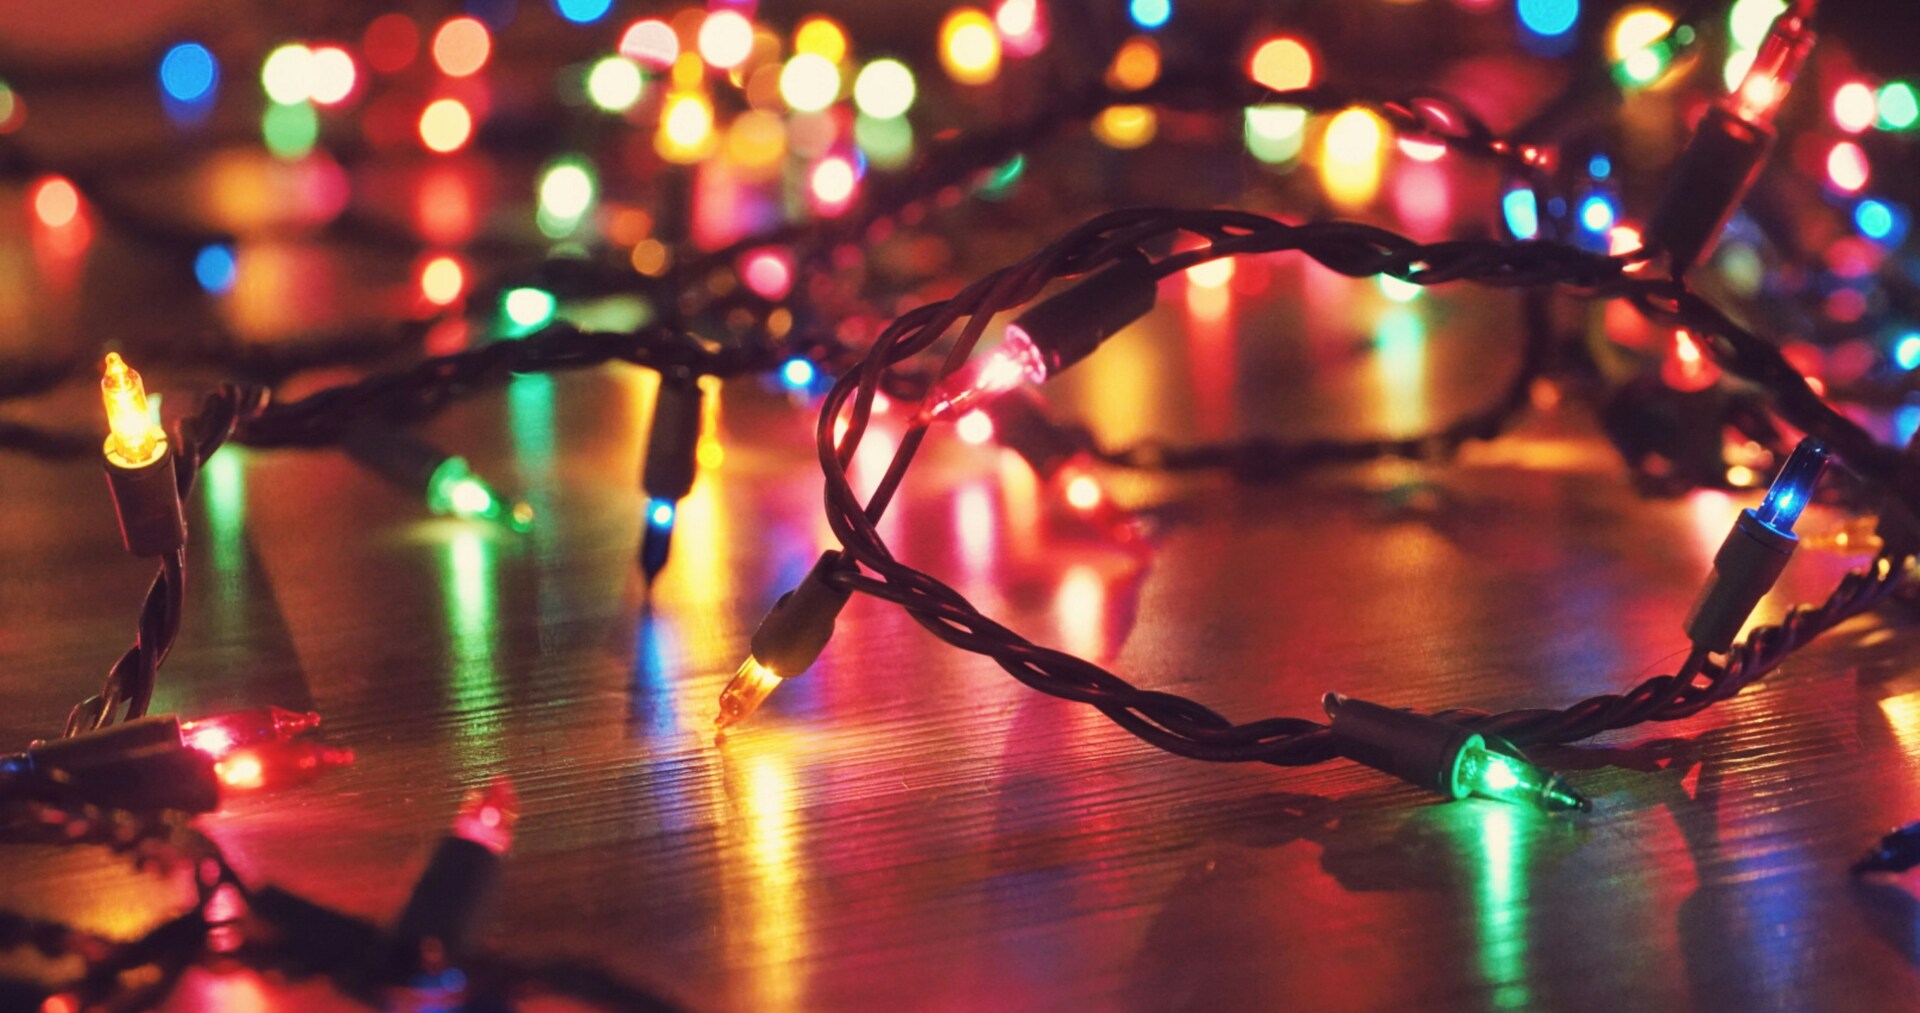 ¿Ya colocaste los adornos navideños? Recuerda revisar la instalación eléctrica para evitar accidentes